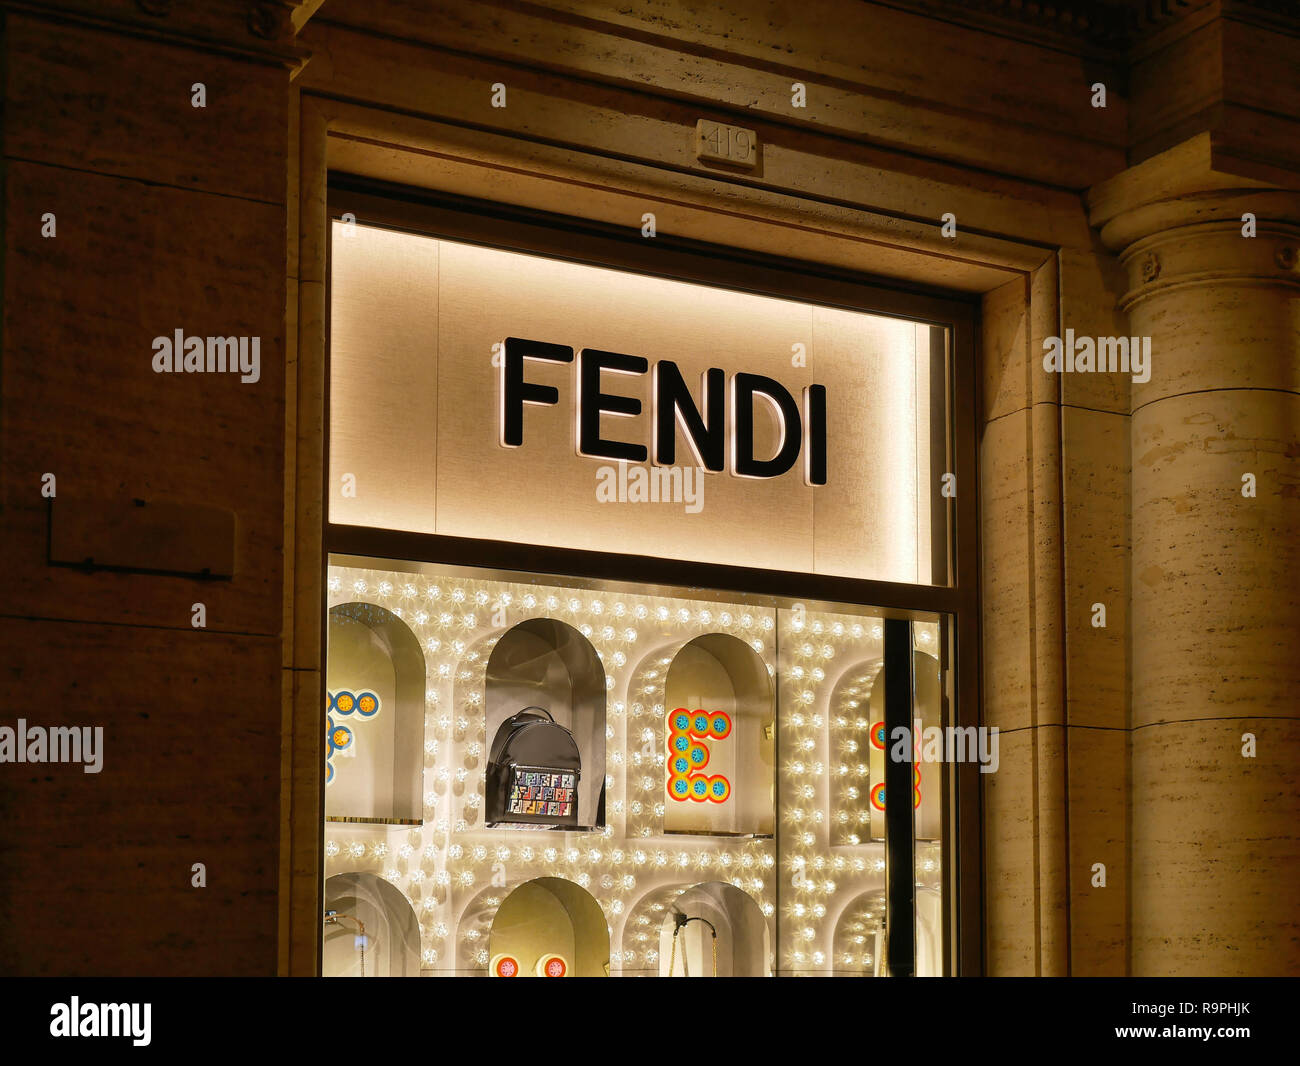 Fendi store in rome｜TikTok Search